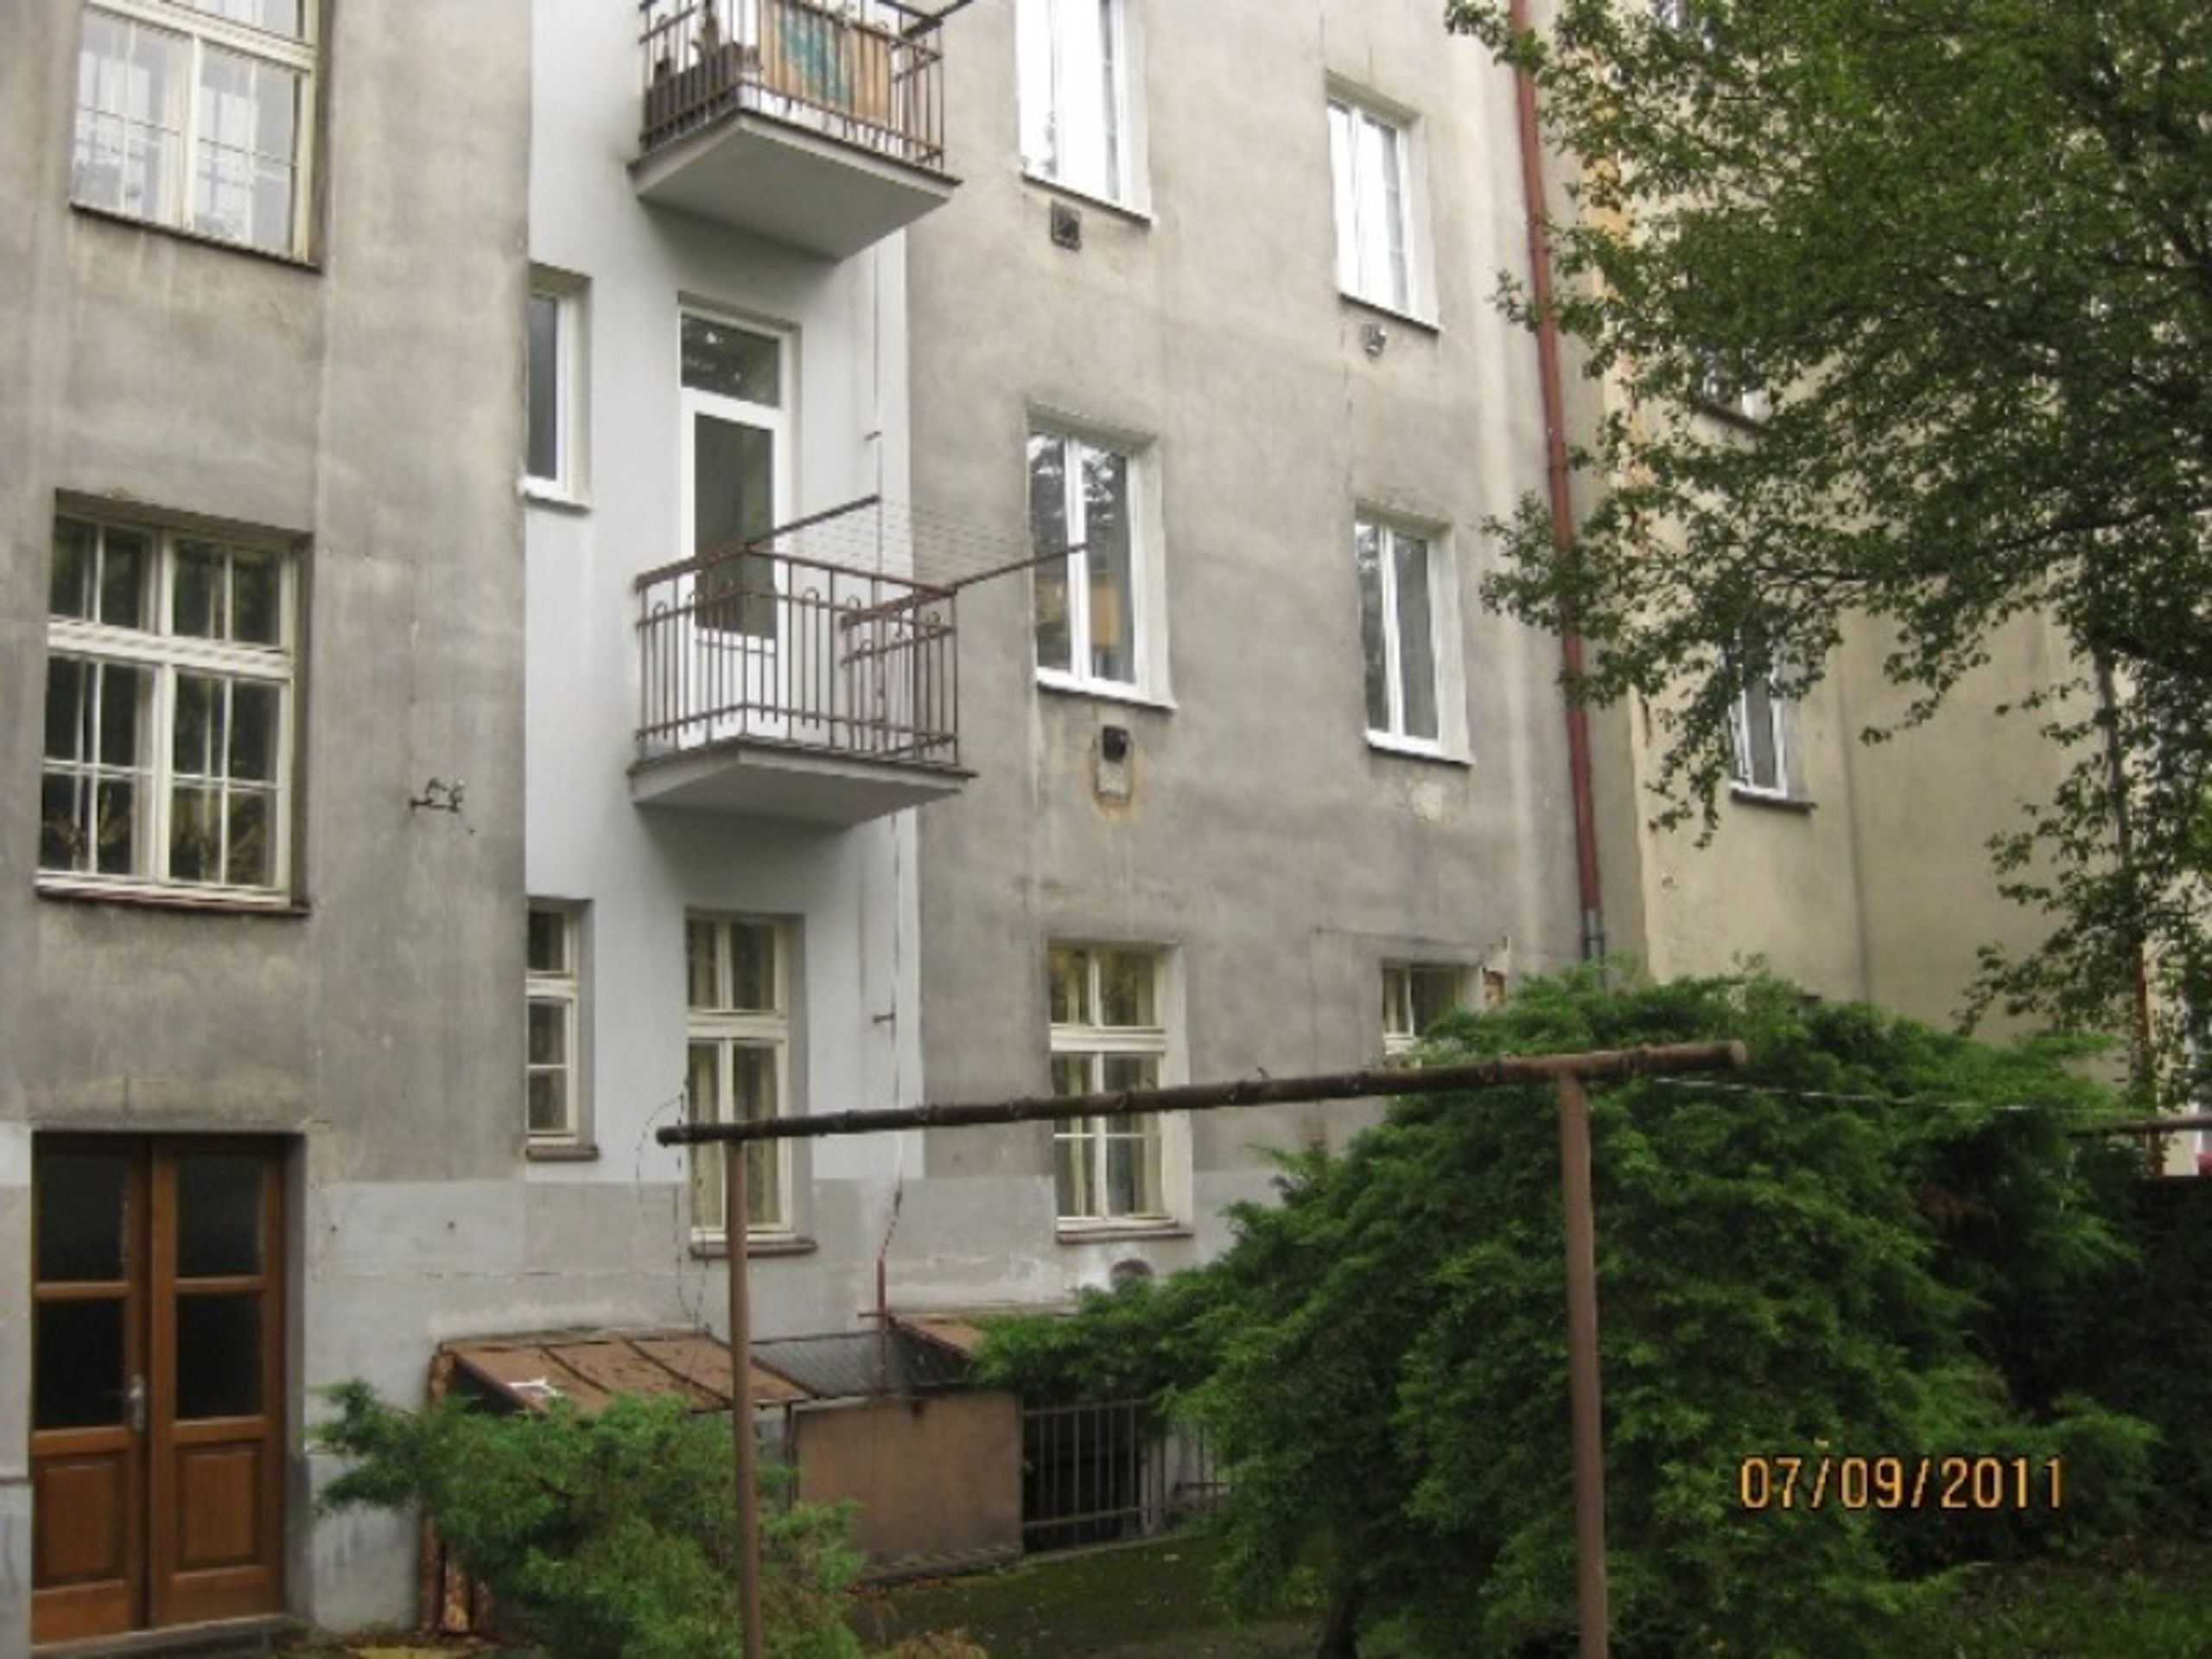 Prodej majetku: 01 byt Plzeň - Jižní předměstí - 3 - GALERIE: Prodej bytu v Plzni - Jižní předměstí 01 (3/4)